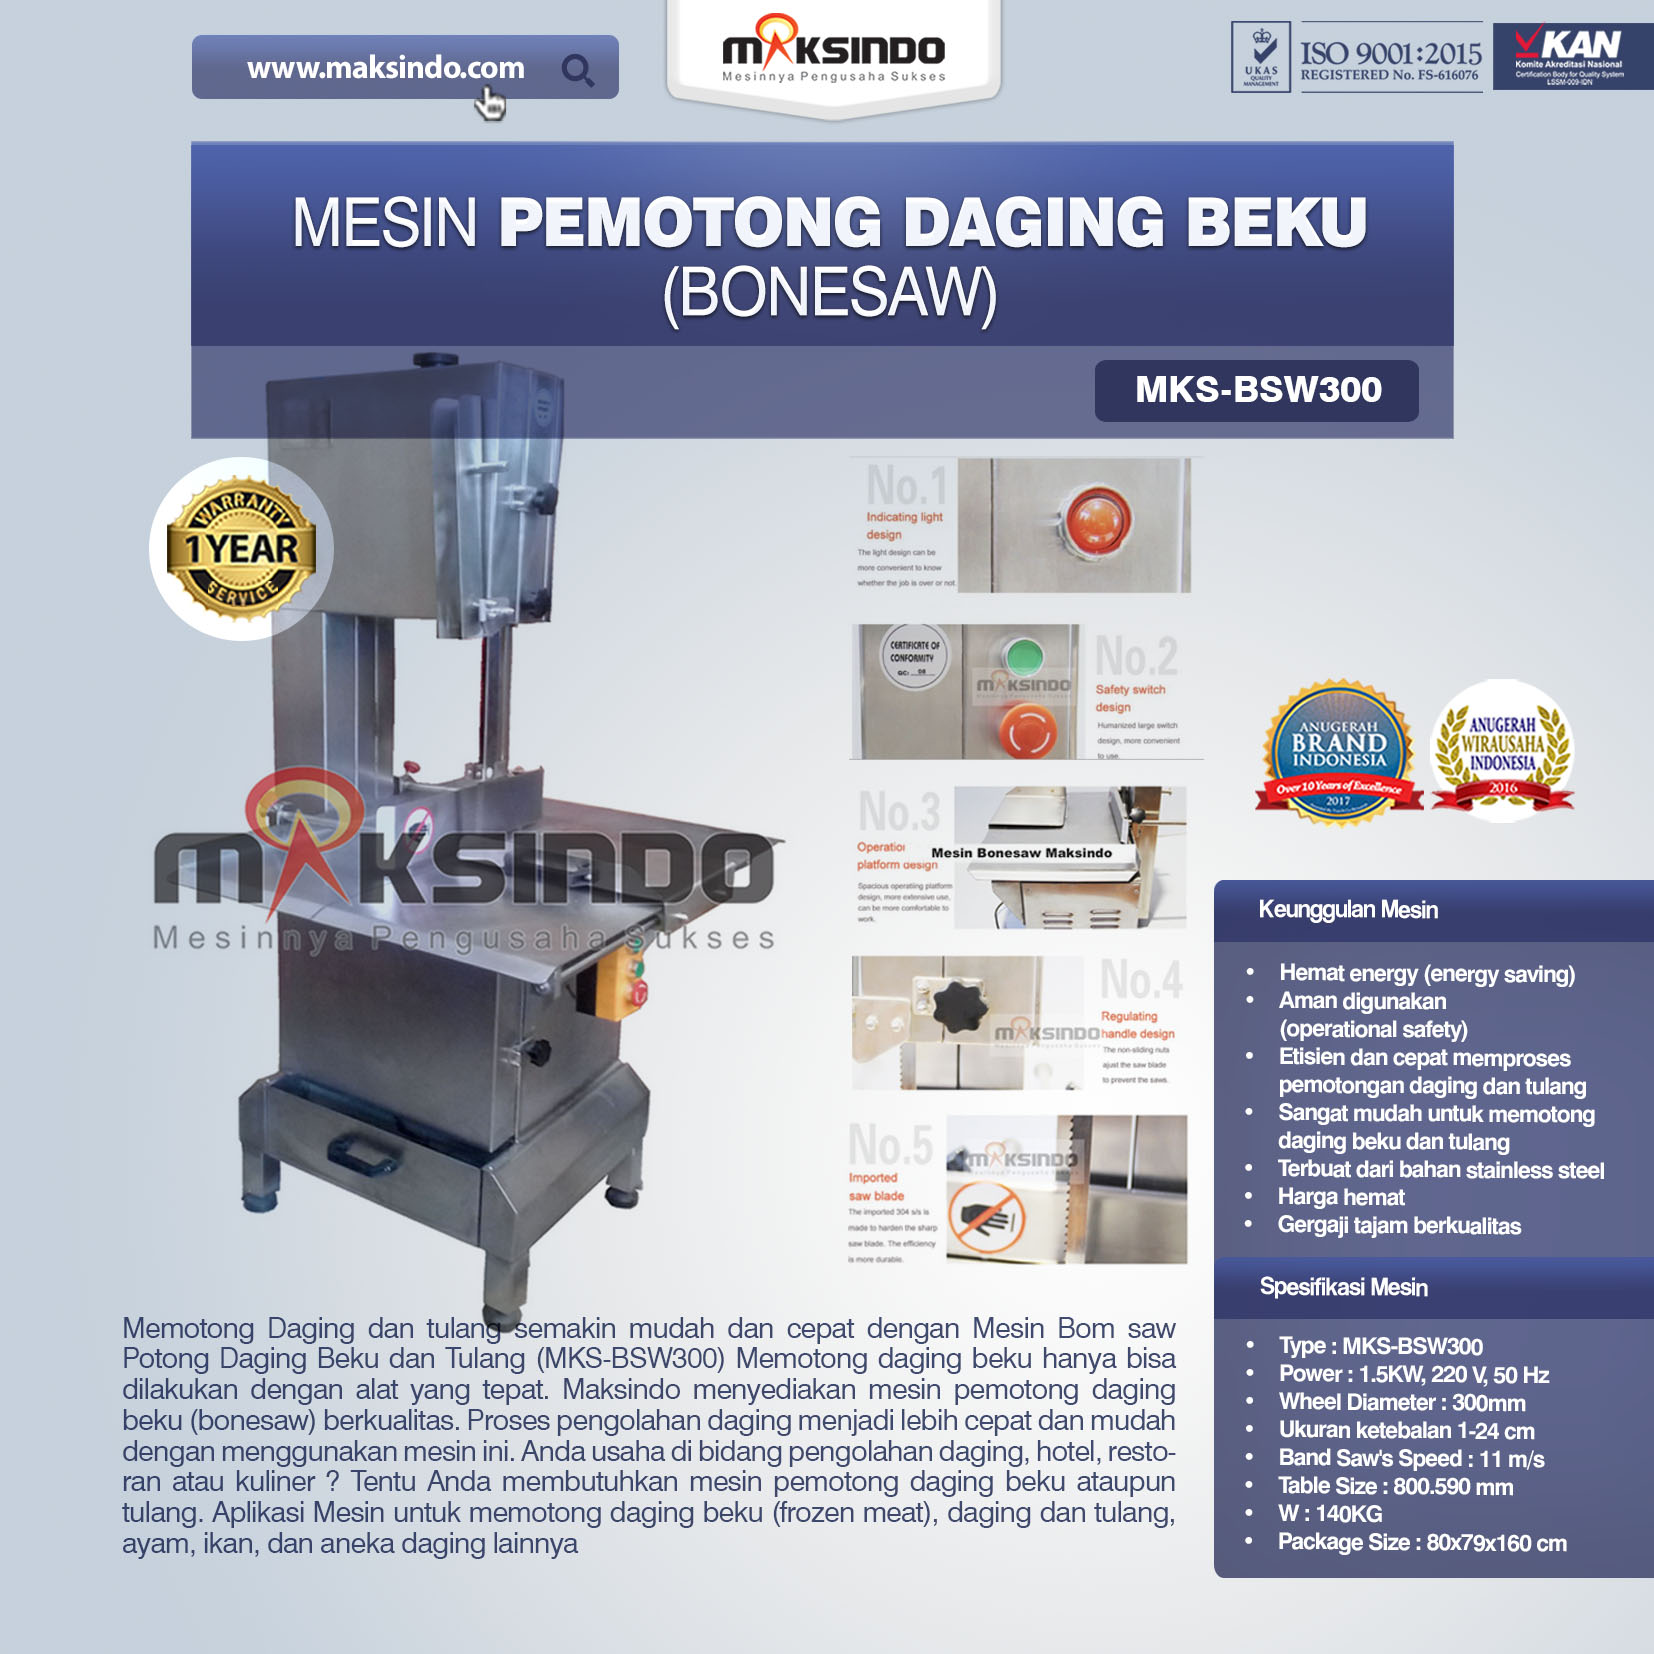 Jual Mesin Mesin Bonesaw Potong Daging Beku dan Tulang (MKS-BSW300) di Malang